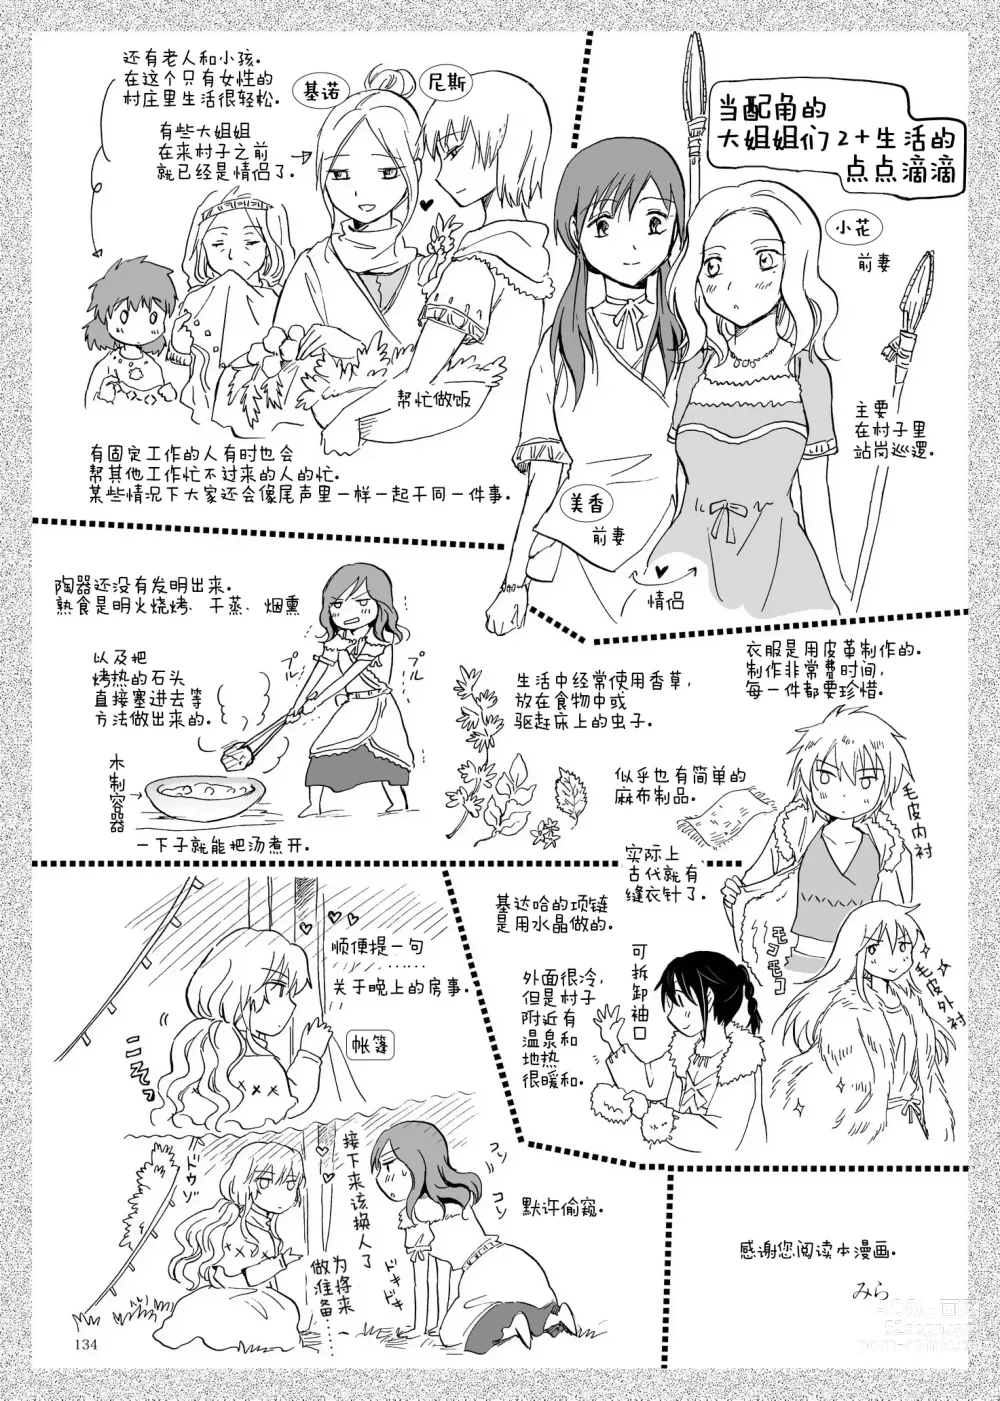 Page 134 of doujinshi EARTH GIRLS